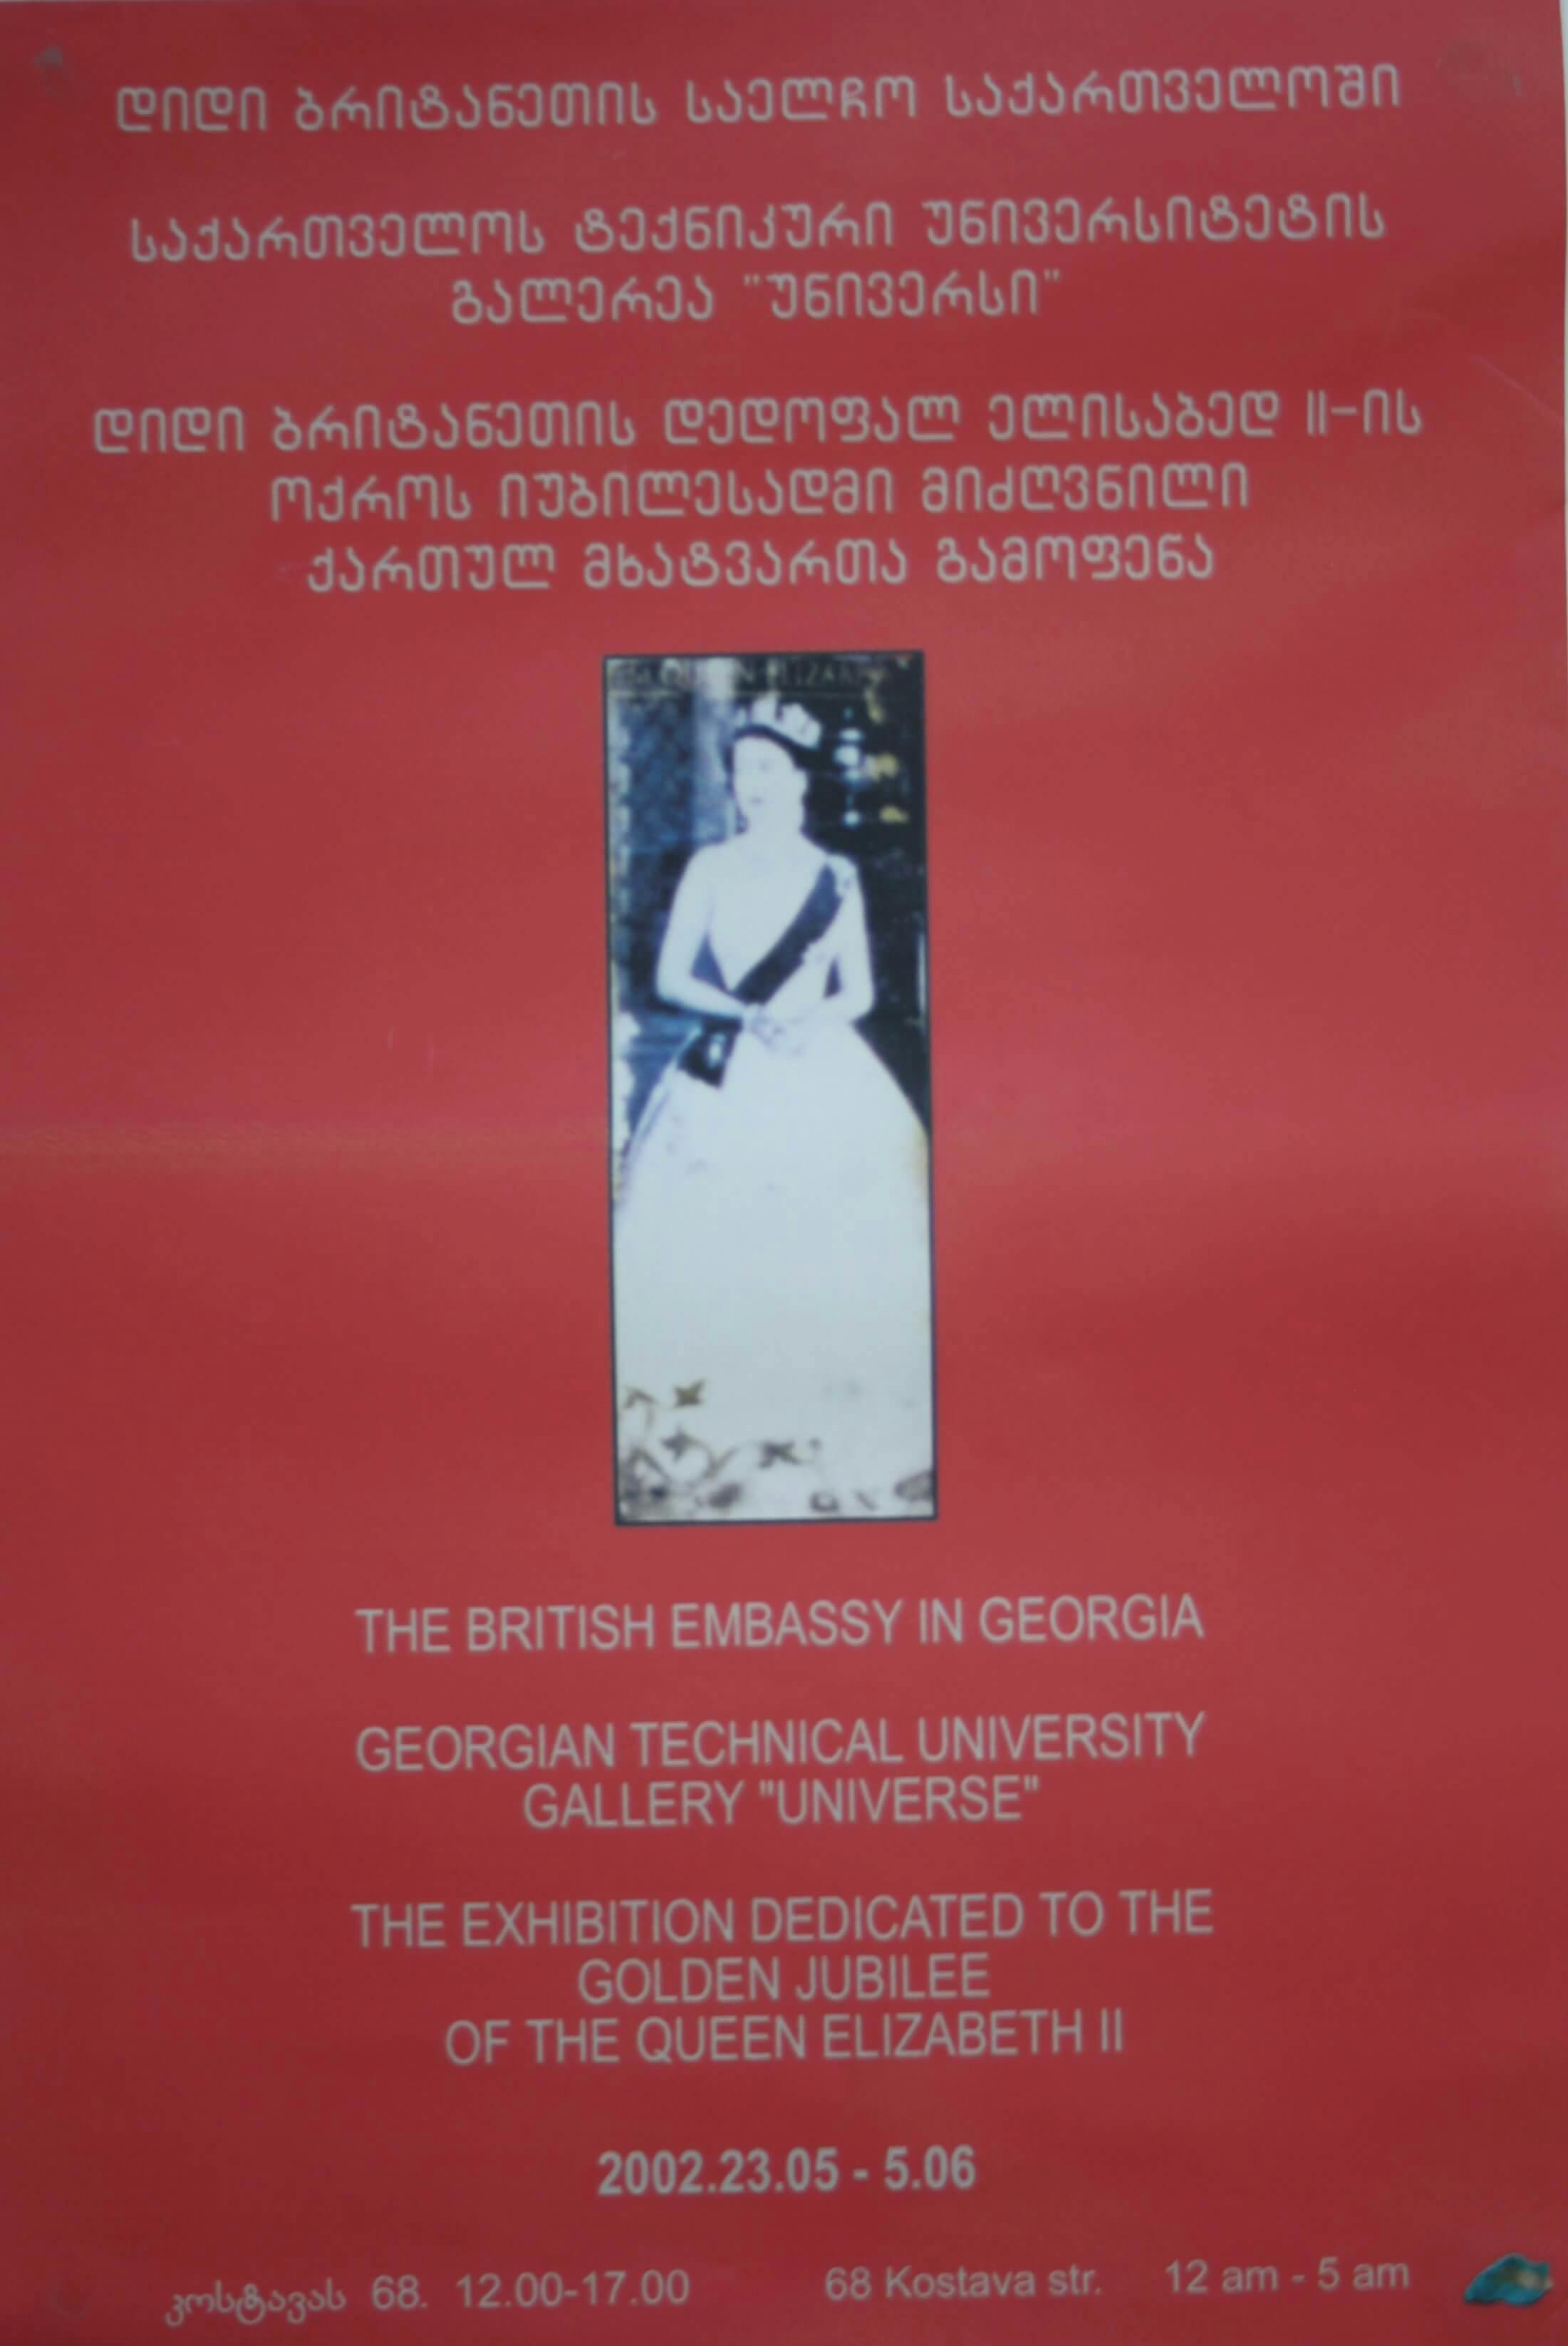 დიდი ბრიტანეთის საელჩო, "დიდი ბრიტანეთის დედოფალ ელისაბედ II-ის ოქროს იუბილესადმი მიძღვნილი ქართველ მხატვართა გამოფენა" - 23.05.-5.06.2002წ.